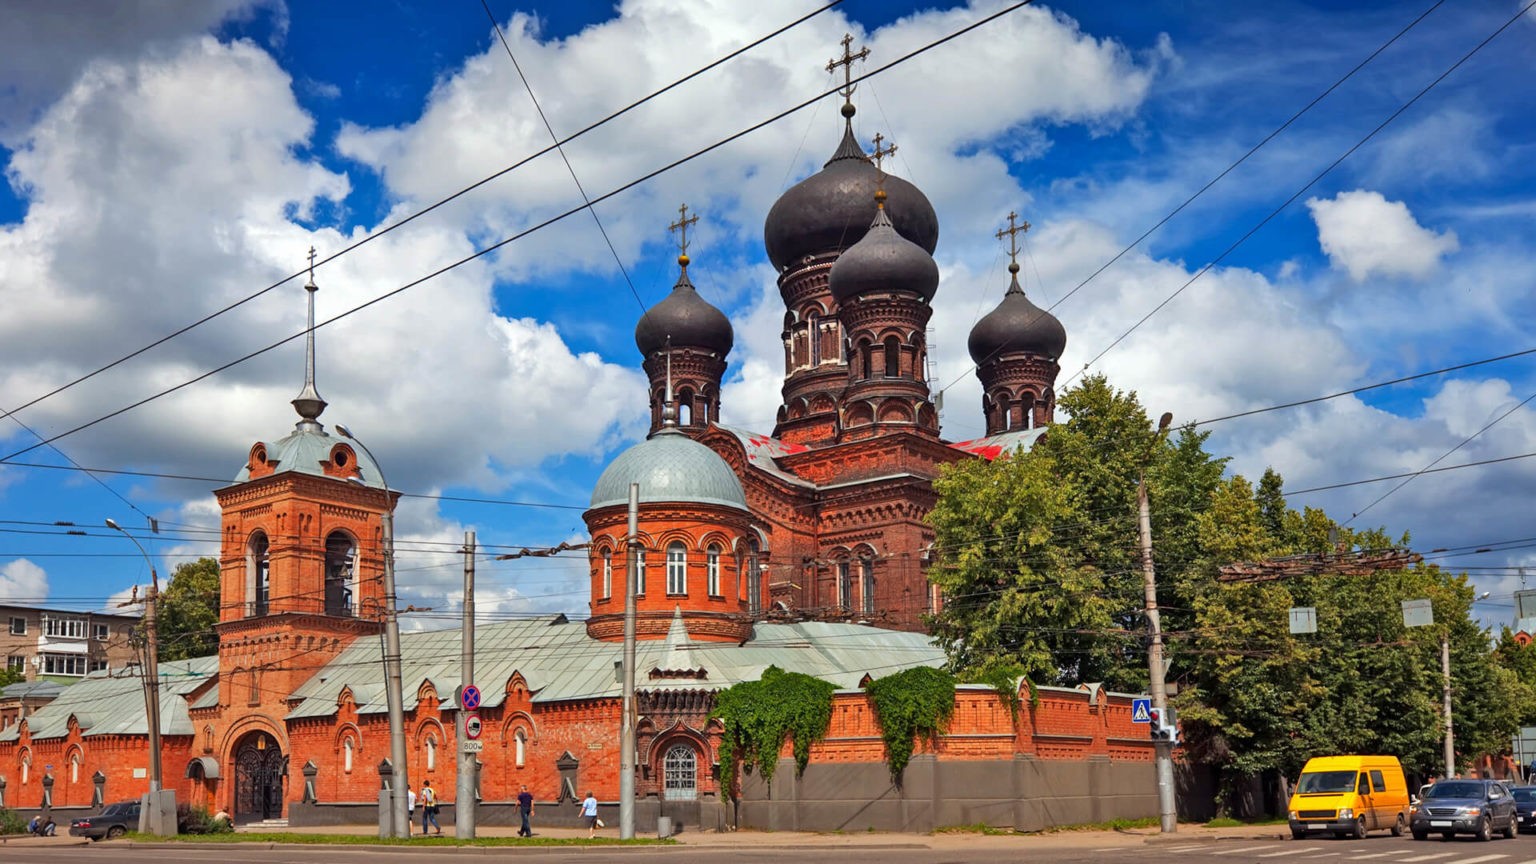 женский православный монастырь в центре города Иваново. Основан в 1991 году архимандритом Амвросием (Юрасовым)